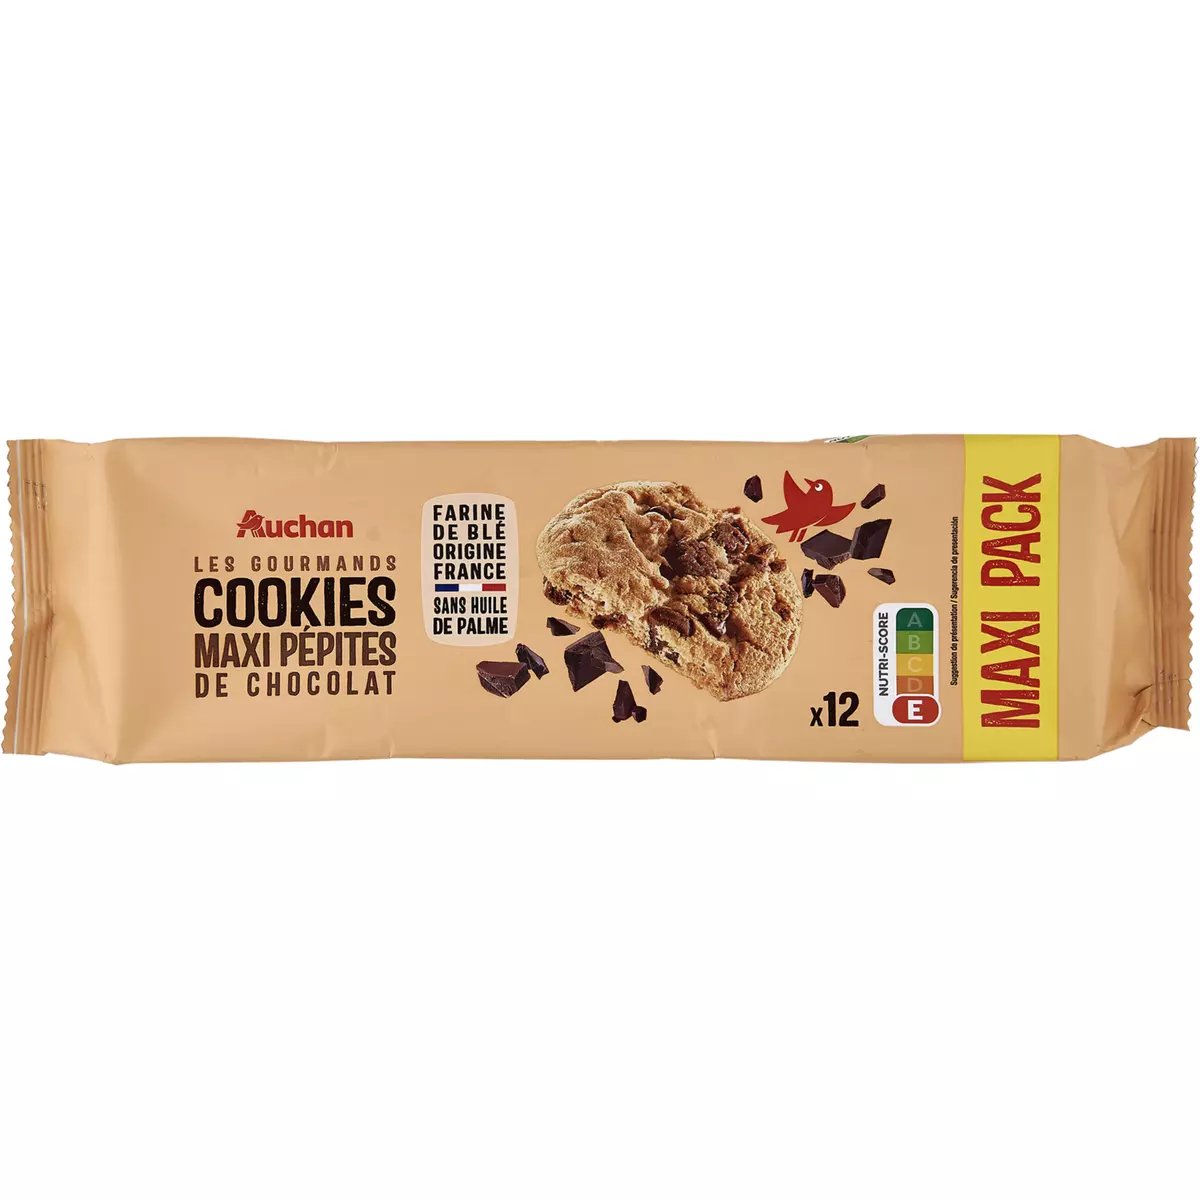 AUCHAN Cookies gourmands maxi pépites de chocolat 12 biscuits 276g